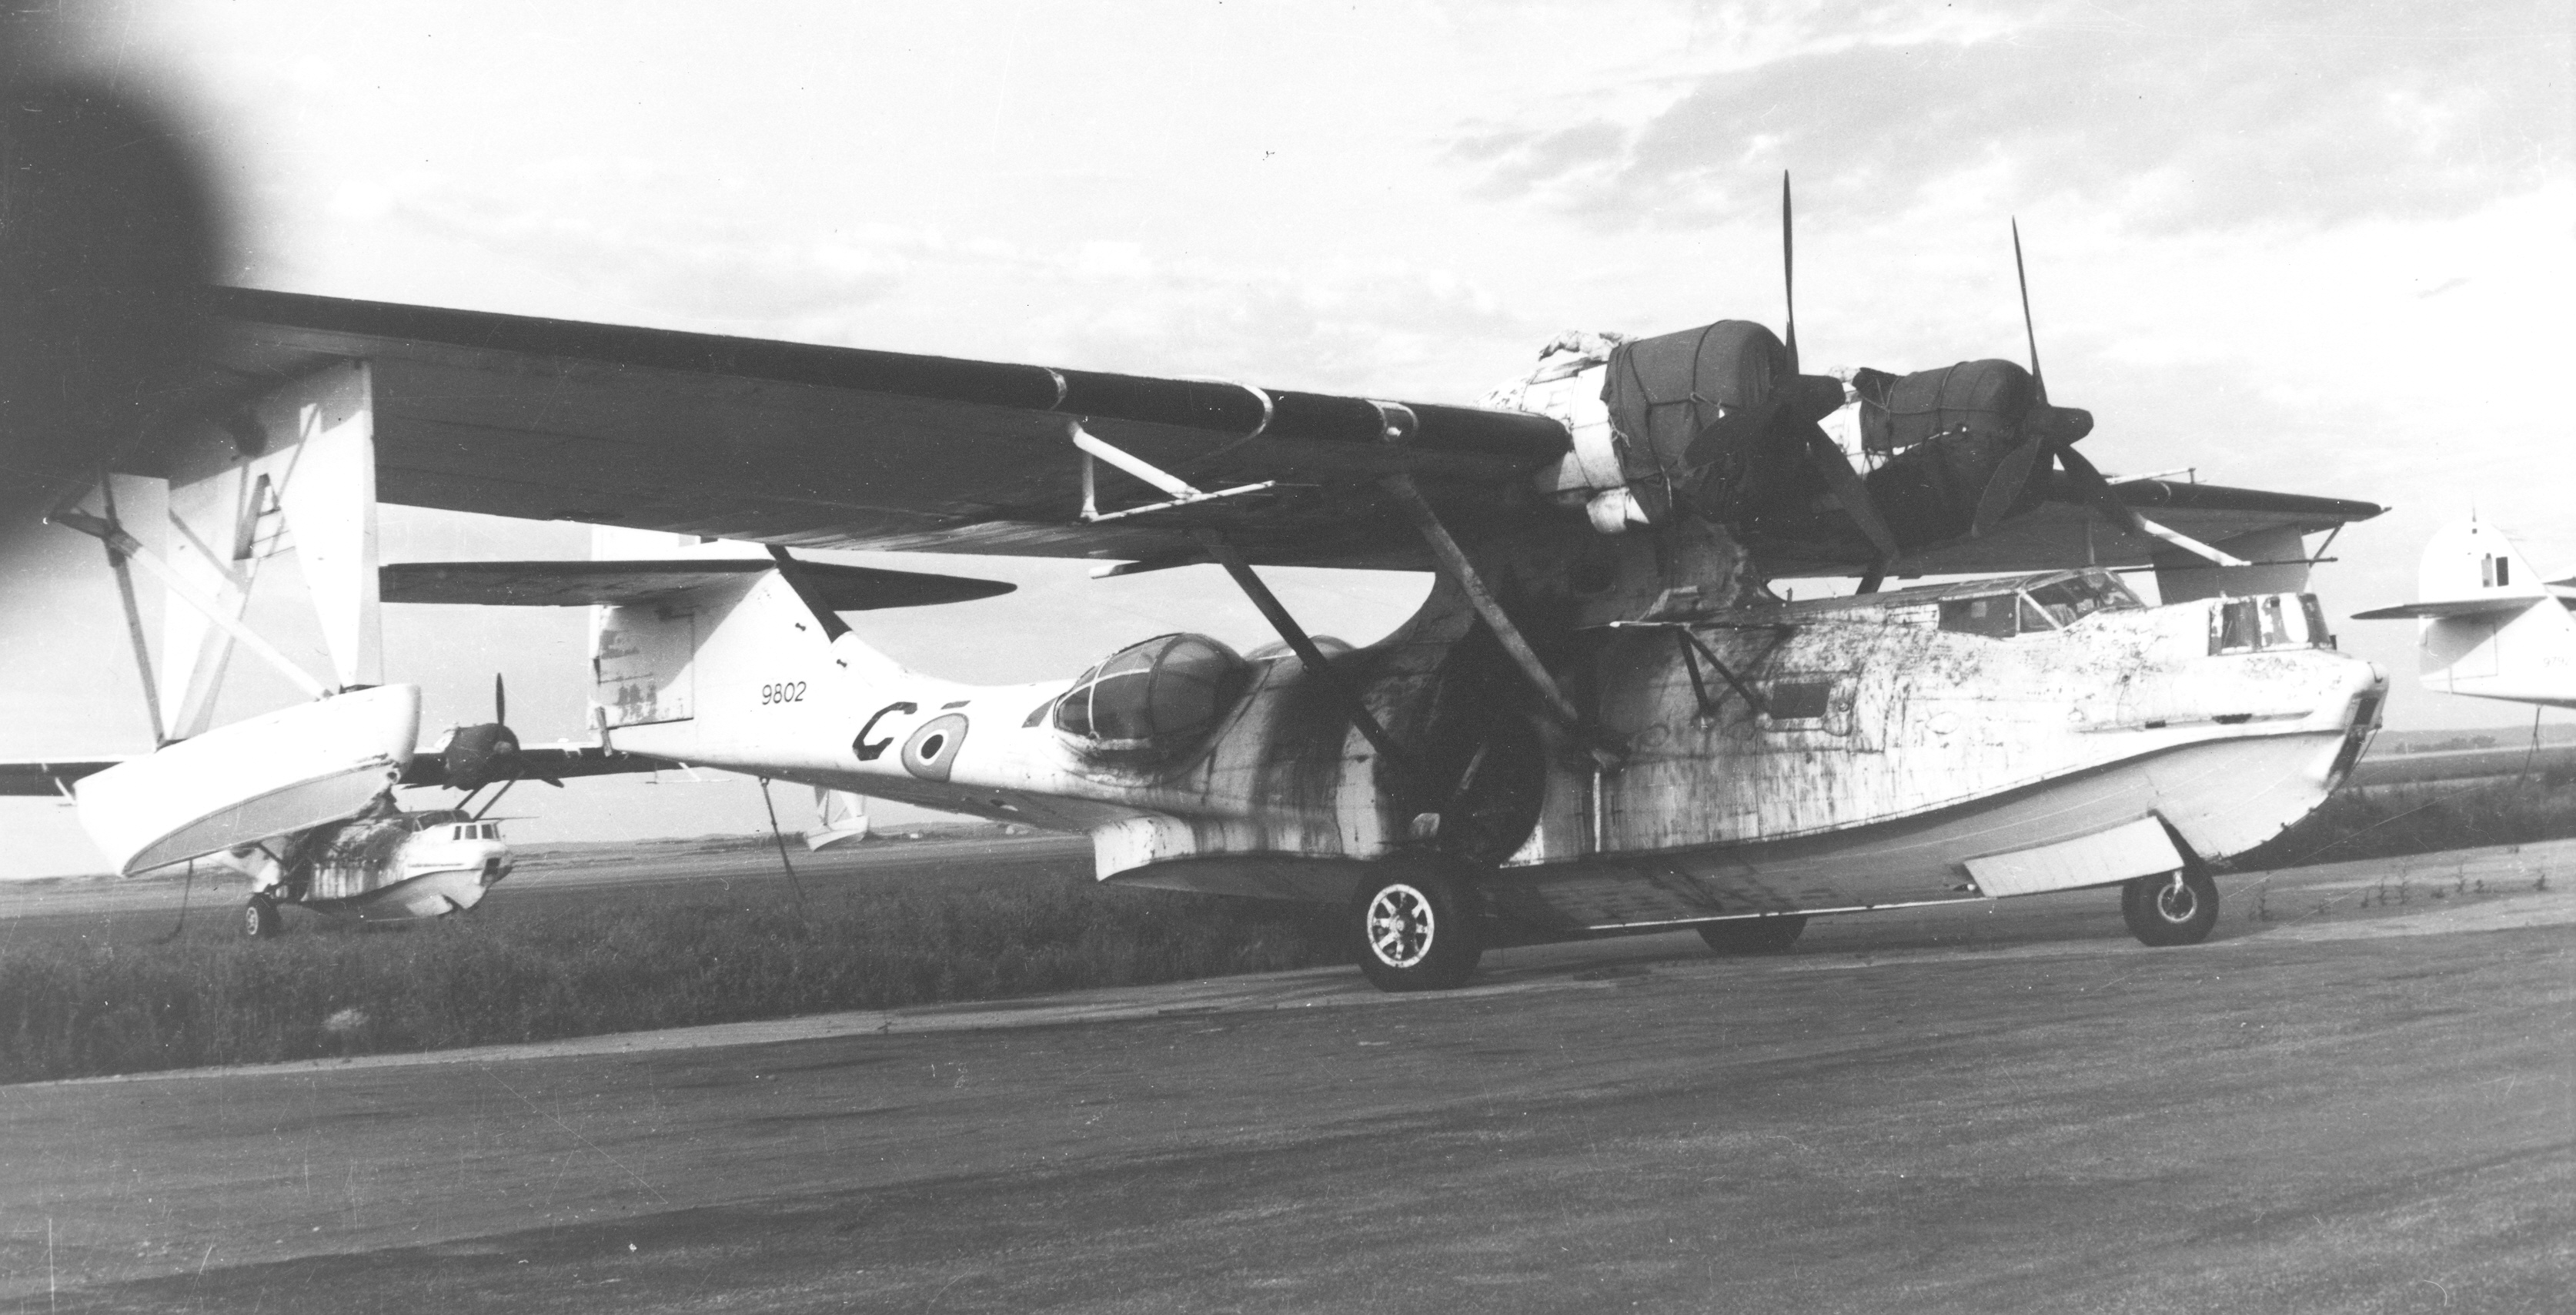 Précédée par le Consolidated Catalina, la variante Canso possédait un train d’atterrissage escamotable qui permettait d’accroître la manœuvrabilité de l’avion. Boeing Canada et Canadian Vickers ont produit plus de 700 Canso, utilisés principalement par l’ARC. PHOTO : MDN